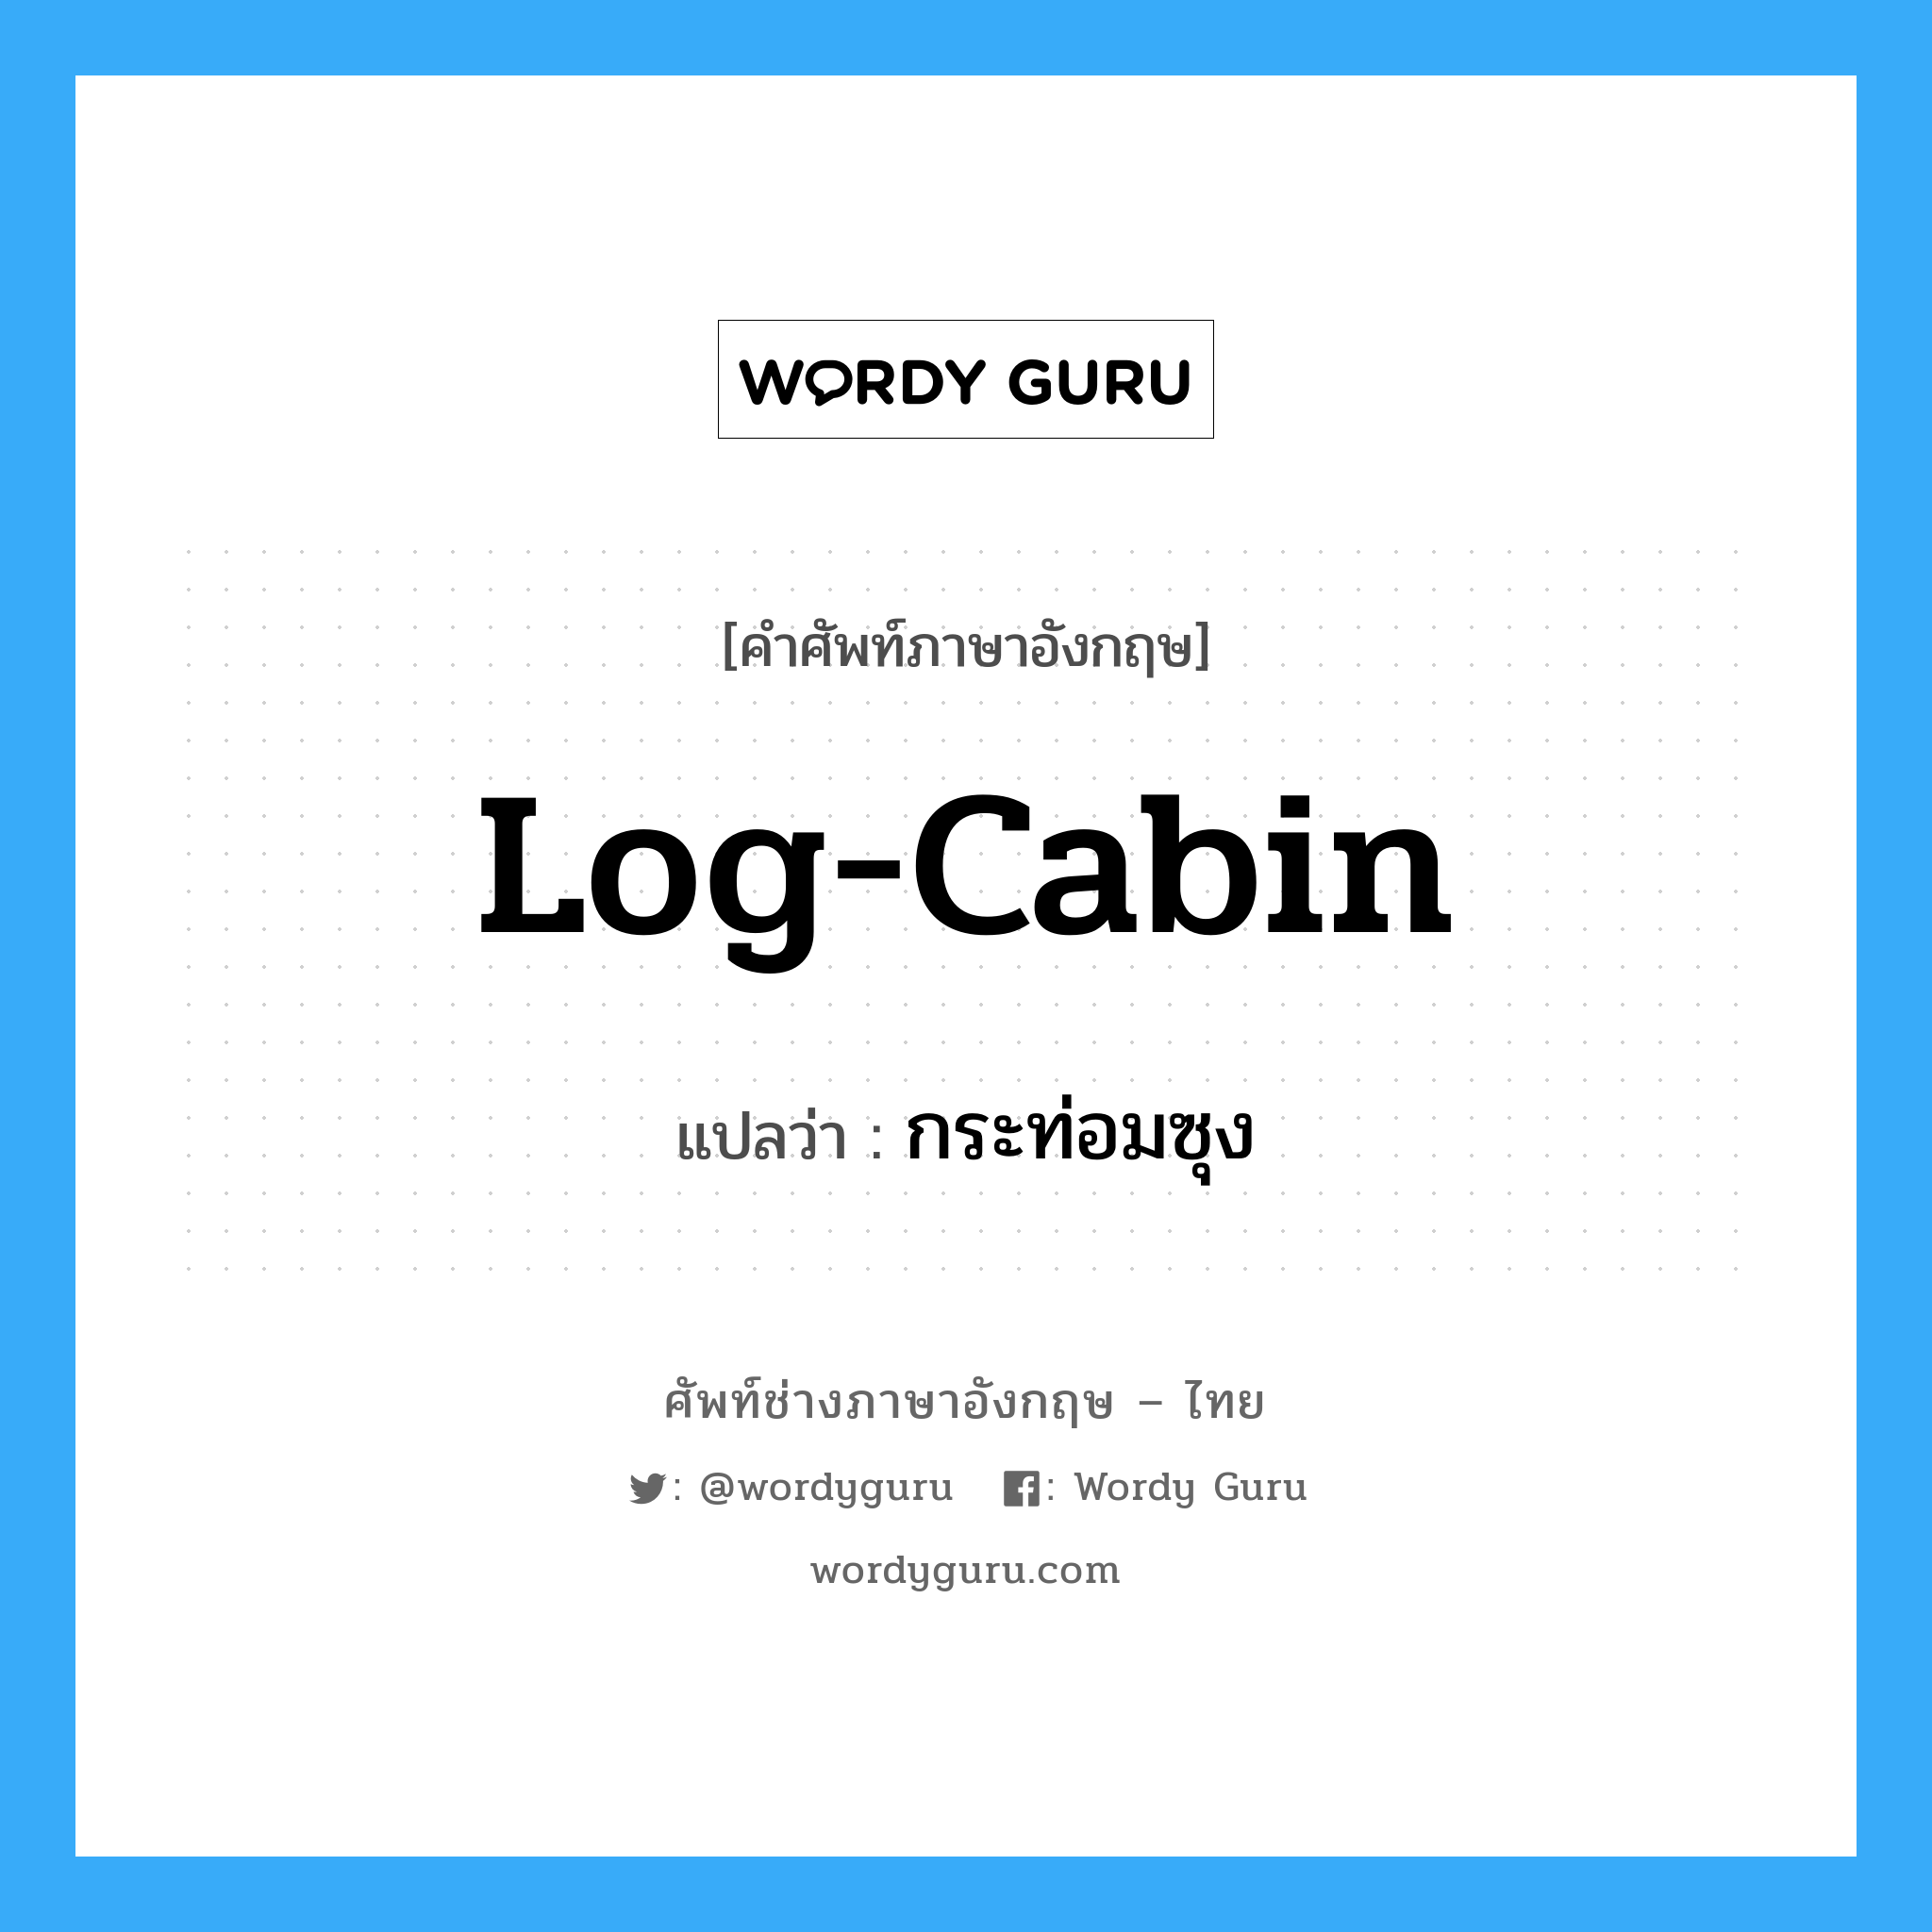 log-cabin แปลว่า?, คำศัพท์ช่างภาษาอังกฤษ - ไทย log-cabin คำศัพท์ภาษาอังกฤษ log-cabin แปลว่า กระท่อมซุง